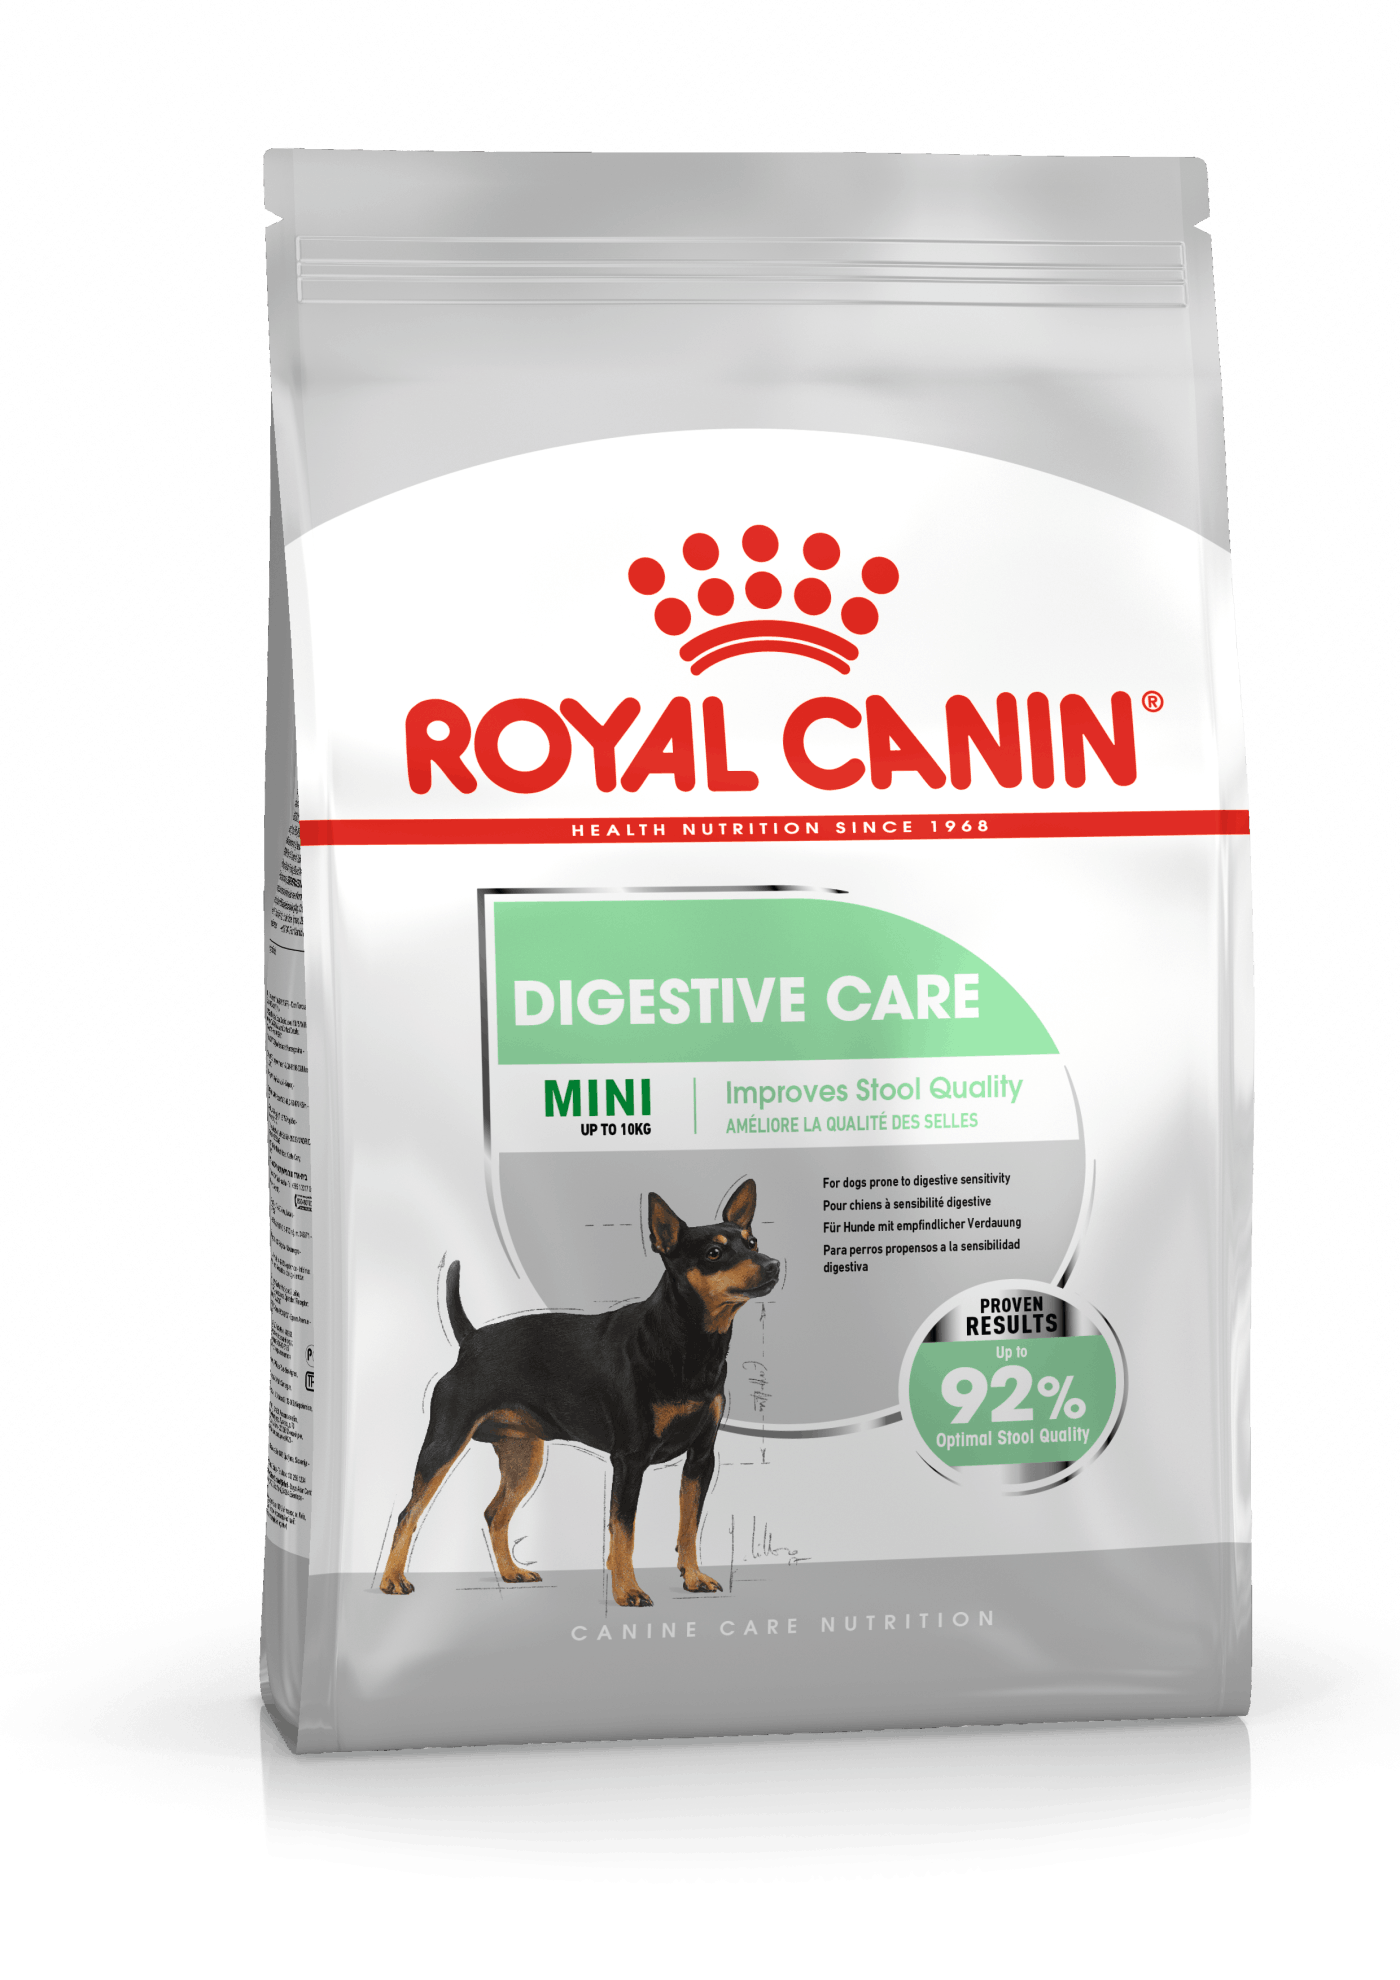 Billede af Royal Canin Mini Digestive Care. Adult (1-10 kg) over 10 måneder med følsom fordøjelse.